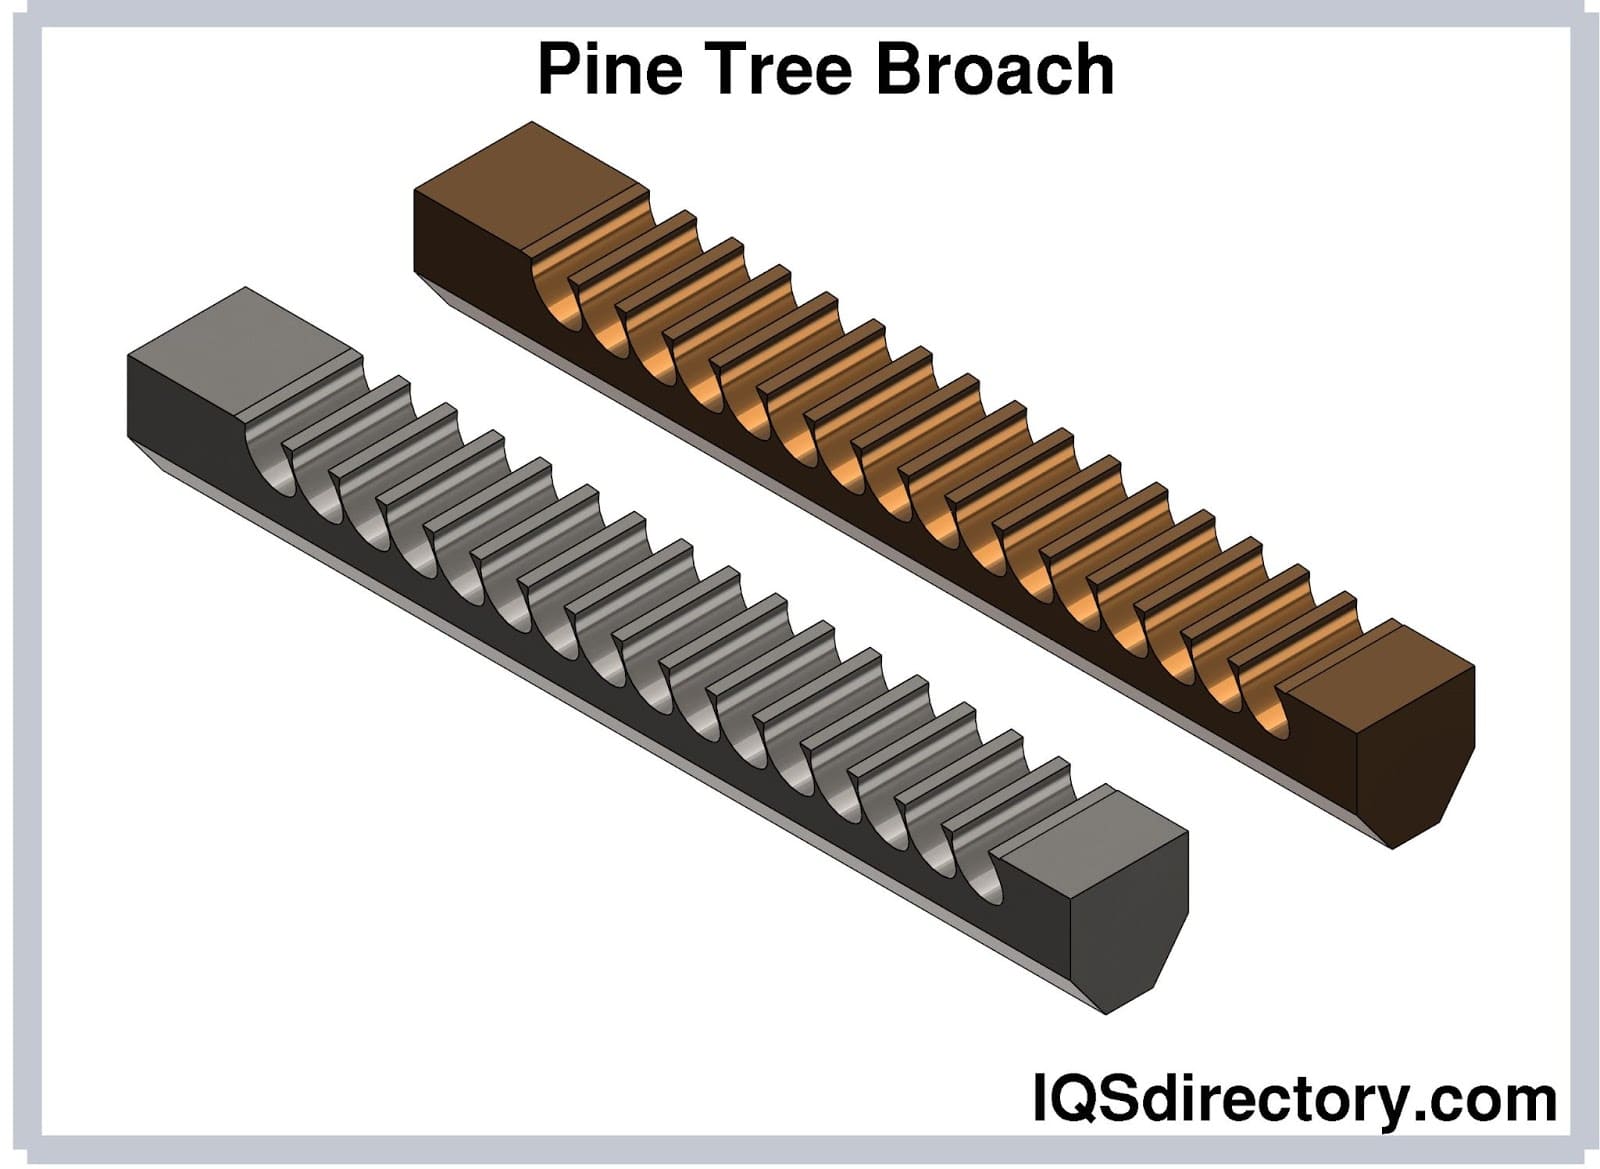 Pine Tree Broach